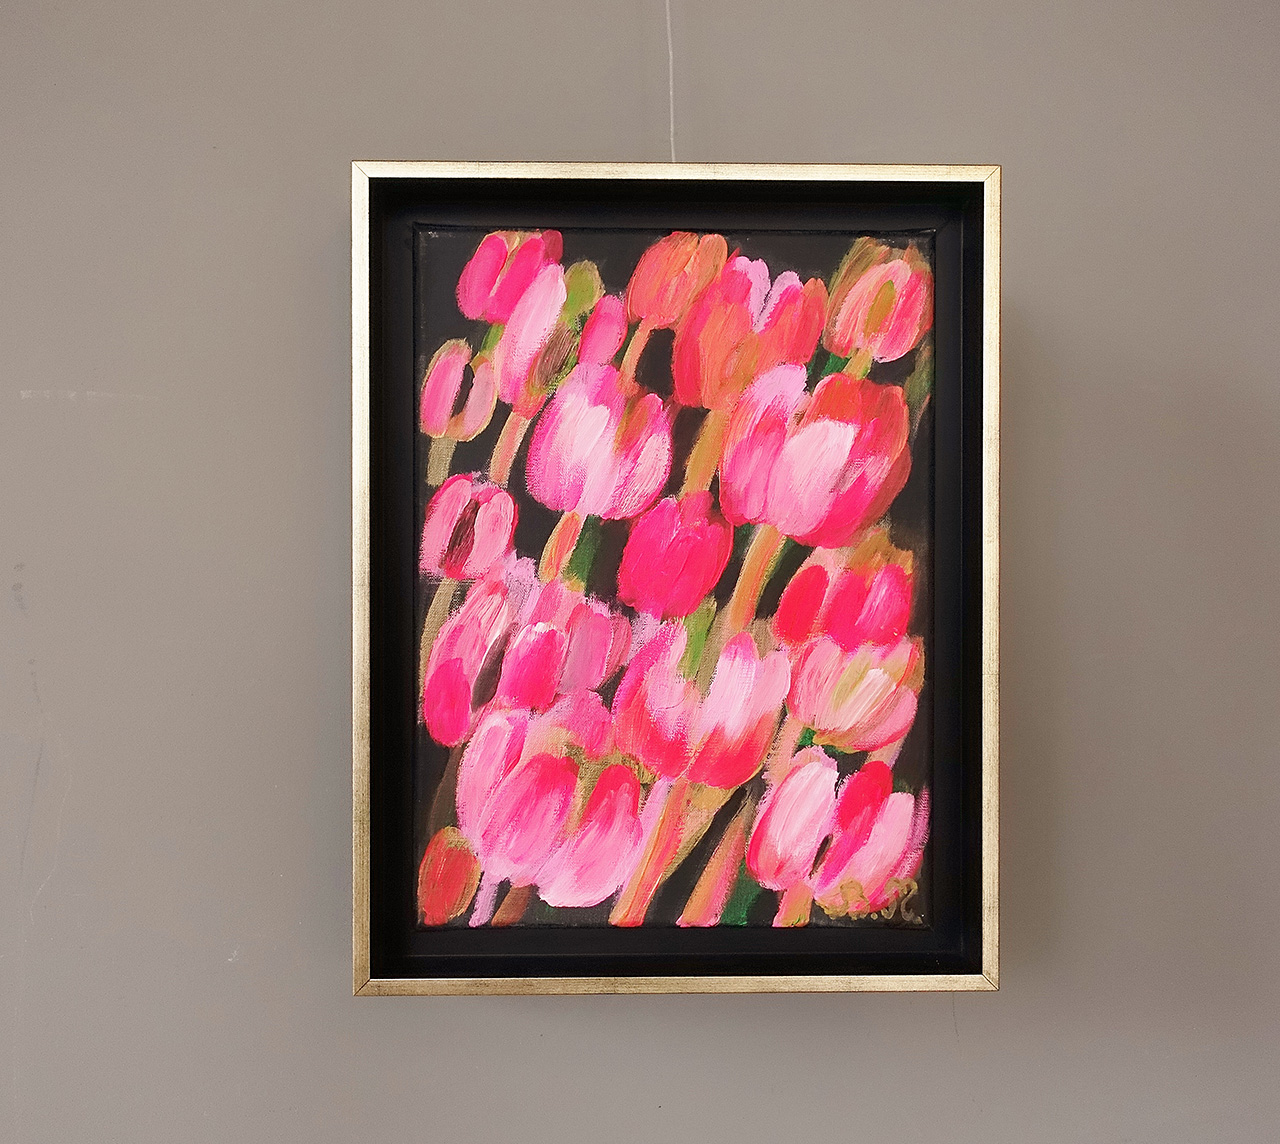 Beata Murawska - Psychodelic tulips